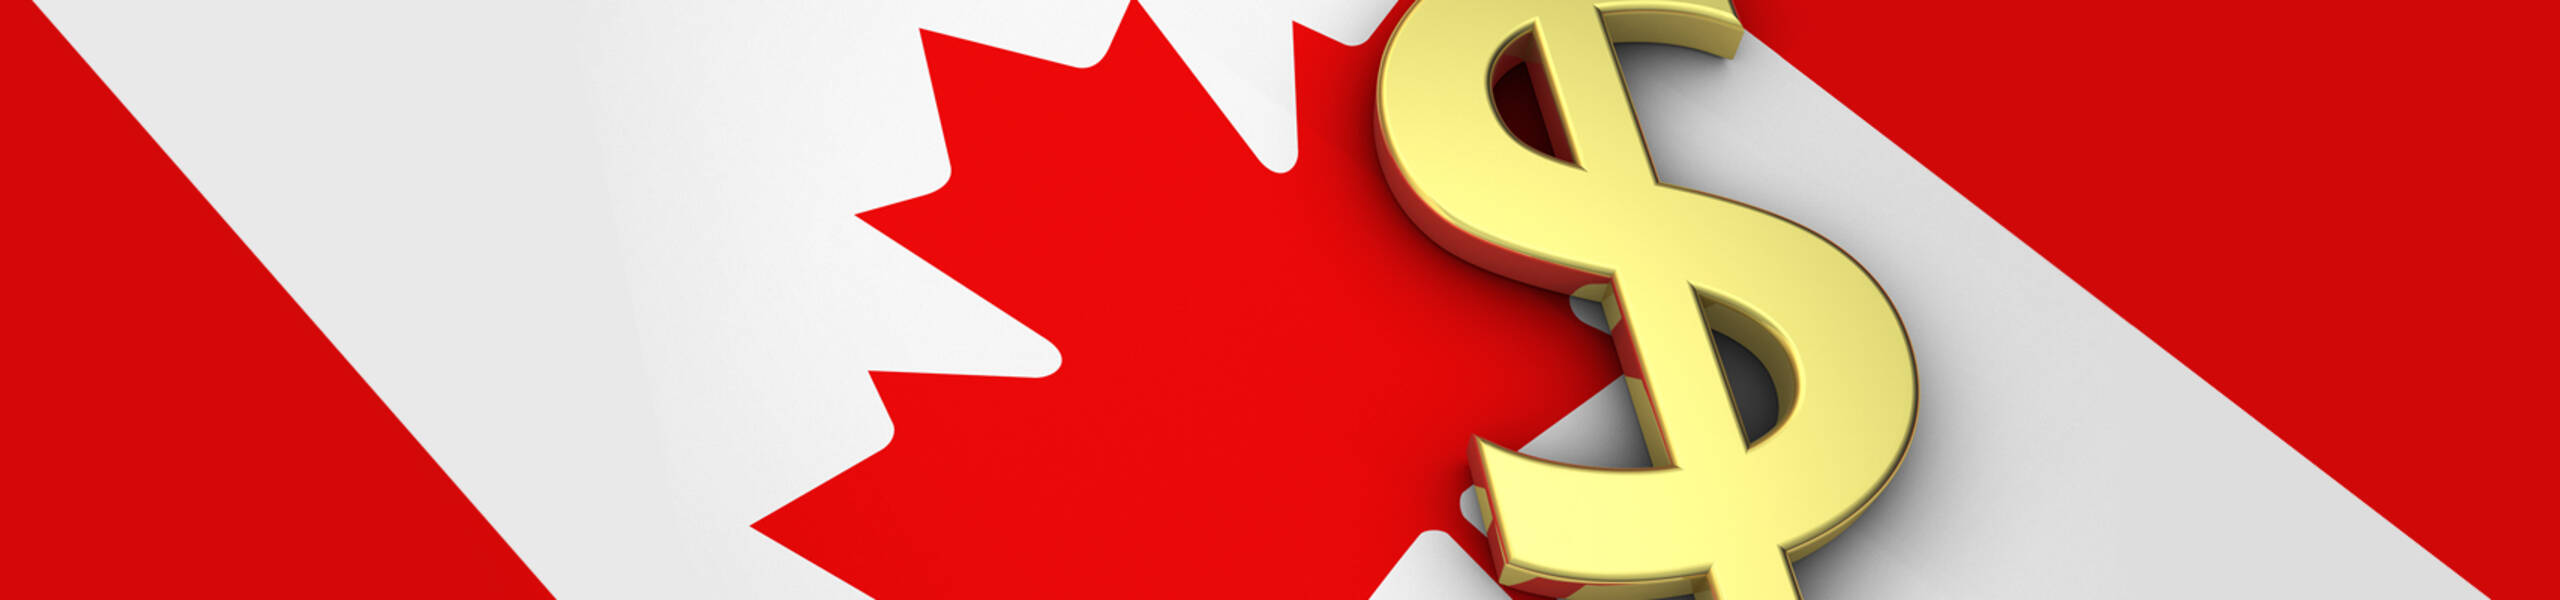 CPI m/m และ Core CPI m/m ของประเทศแคนาดาเรามาดูกันว่าเป้าหมายจะอยู่จุดไหน